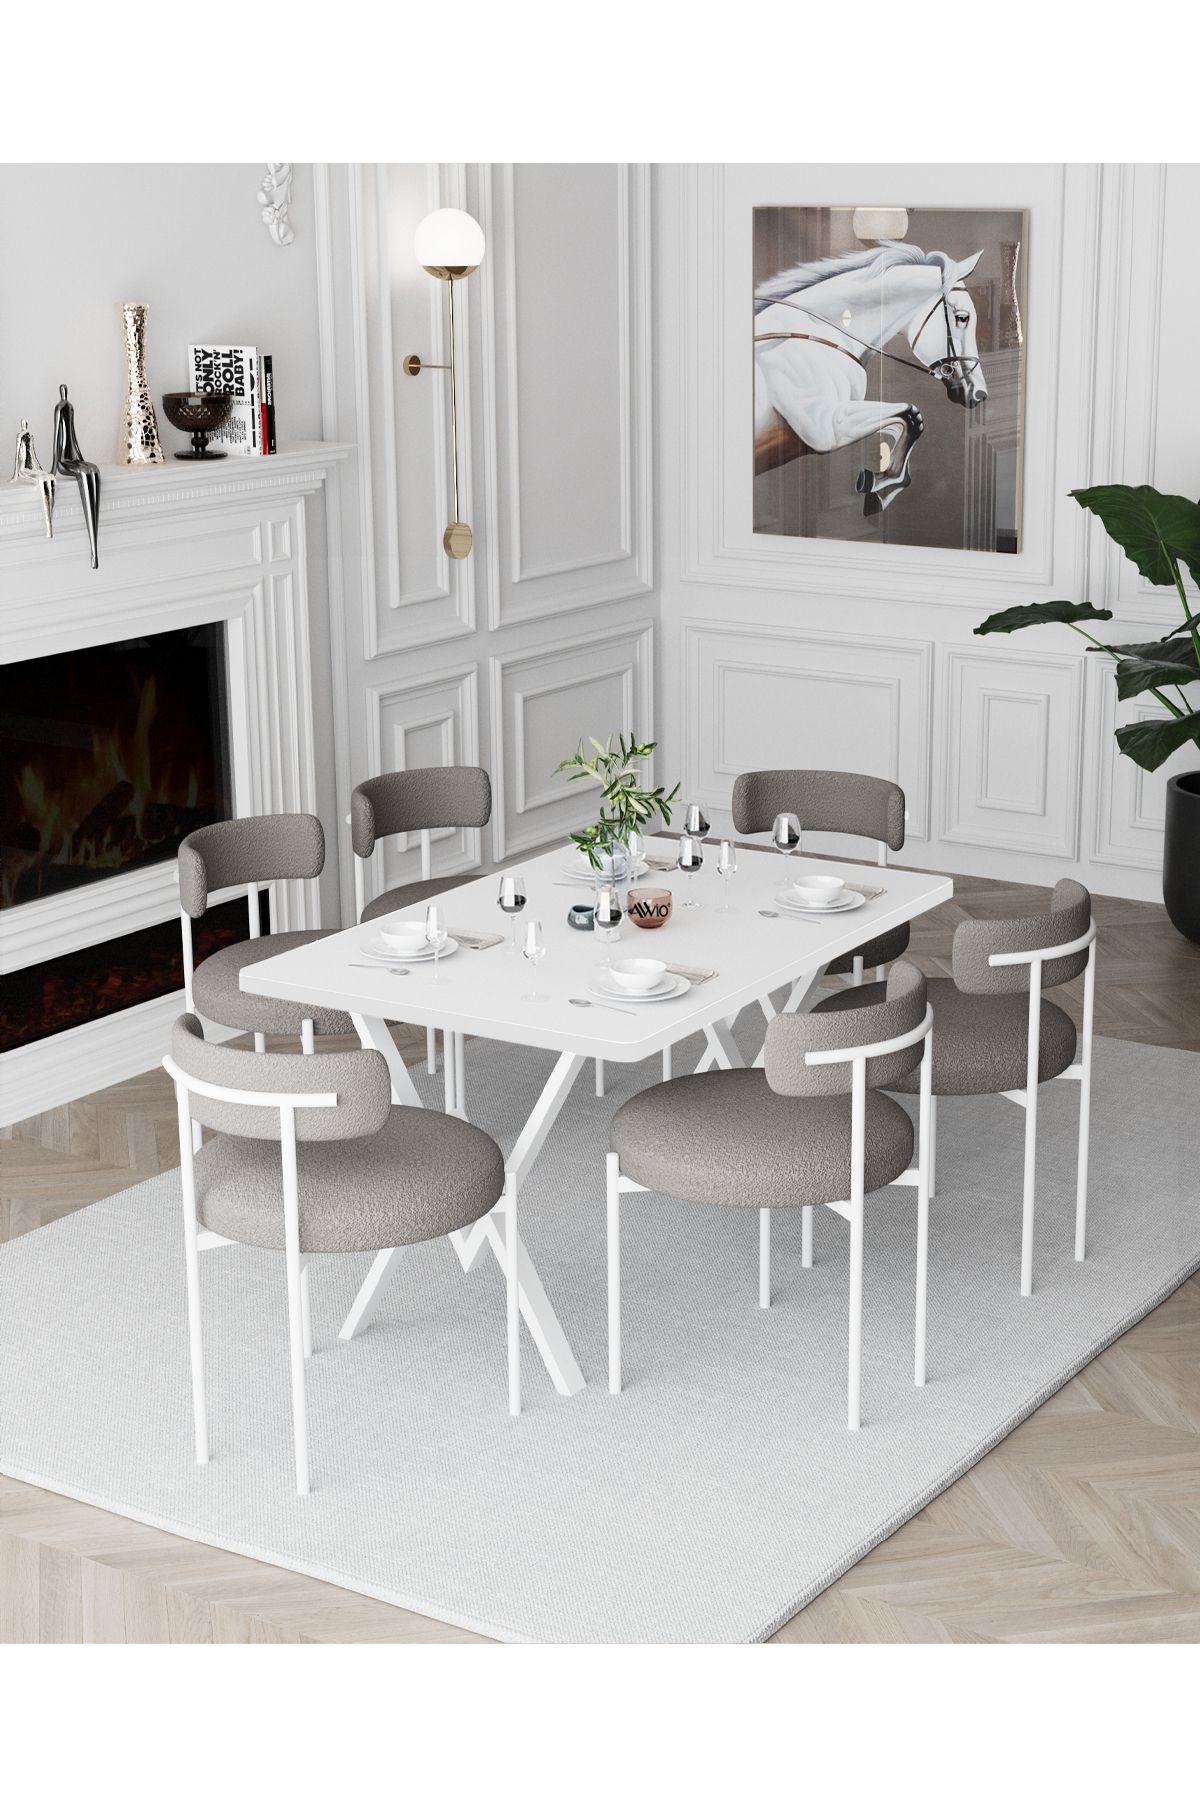 Avvio Larina Beyaz Teddy Sandalye 80x140 Yemek Masası Mutfak Masası 6 Kişilik Masa Sandalye Takımı